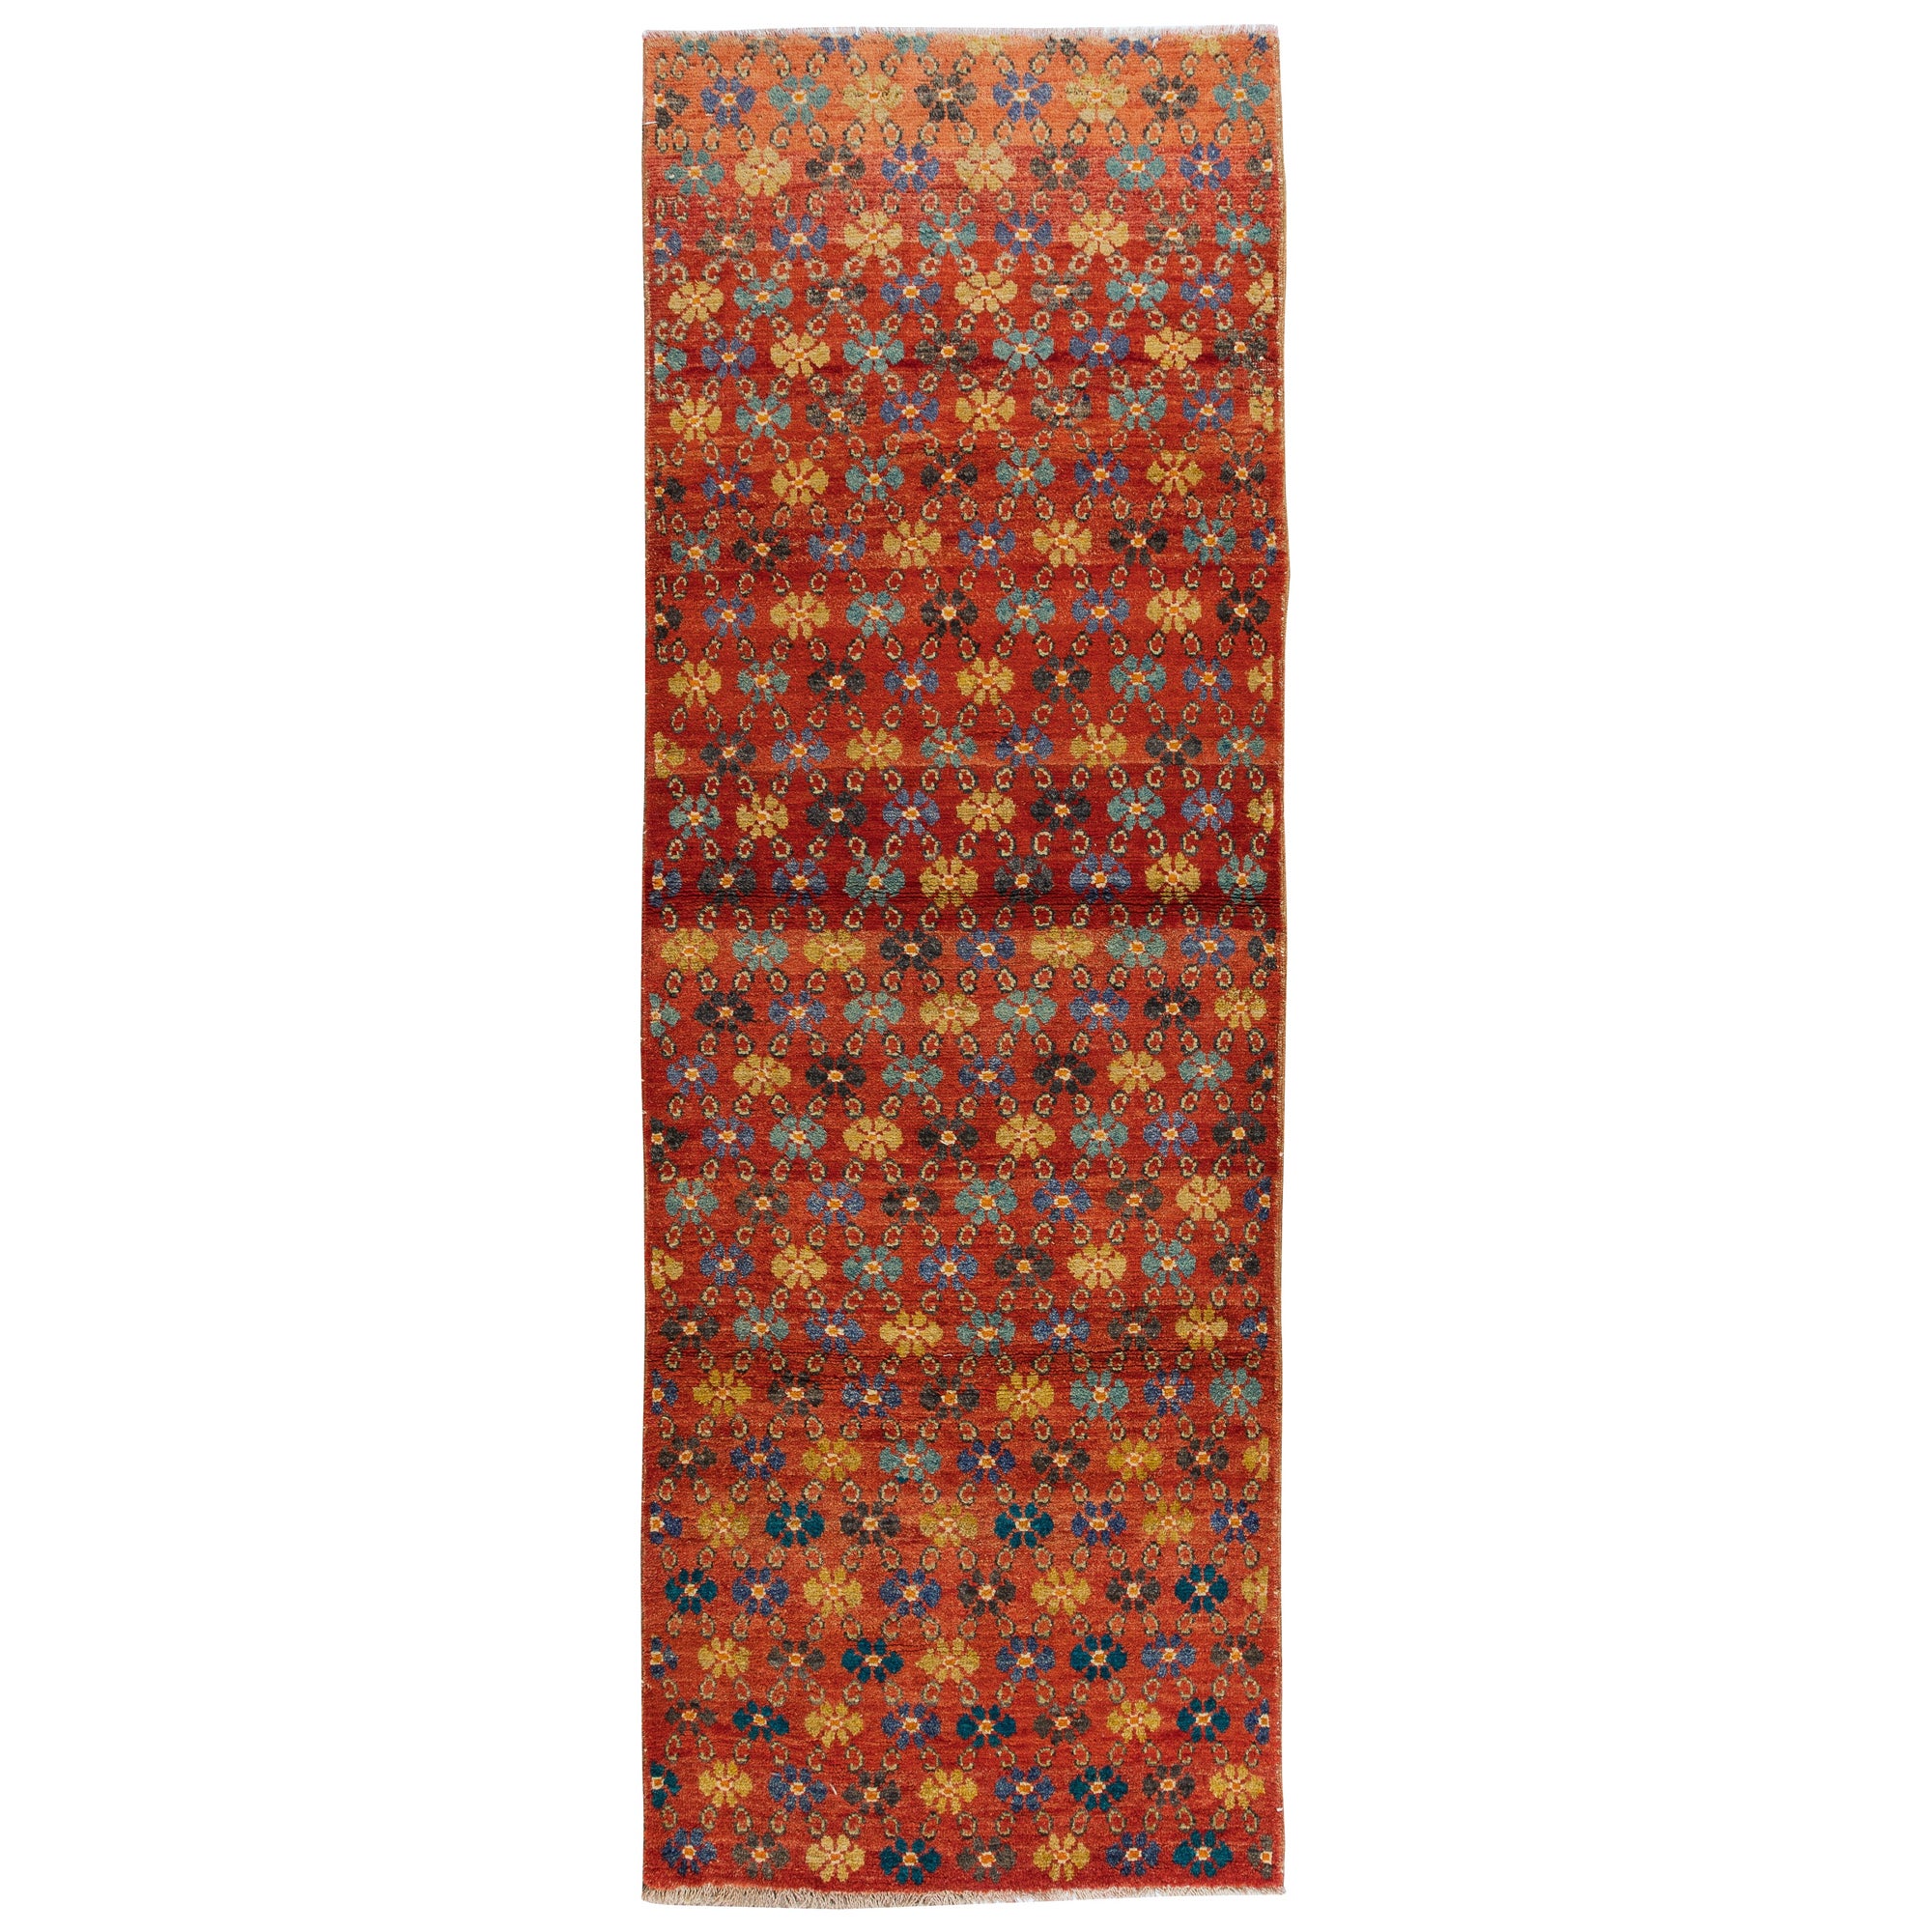 3.2x9.2 Ft Handmade Vintage Turkish Floral Runner Rug, Red Corridor Carpet For Sale